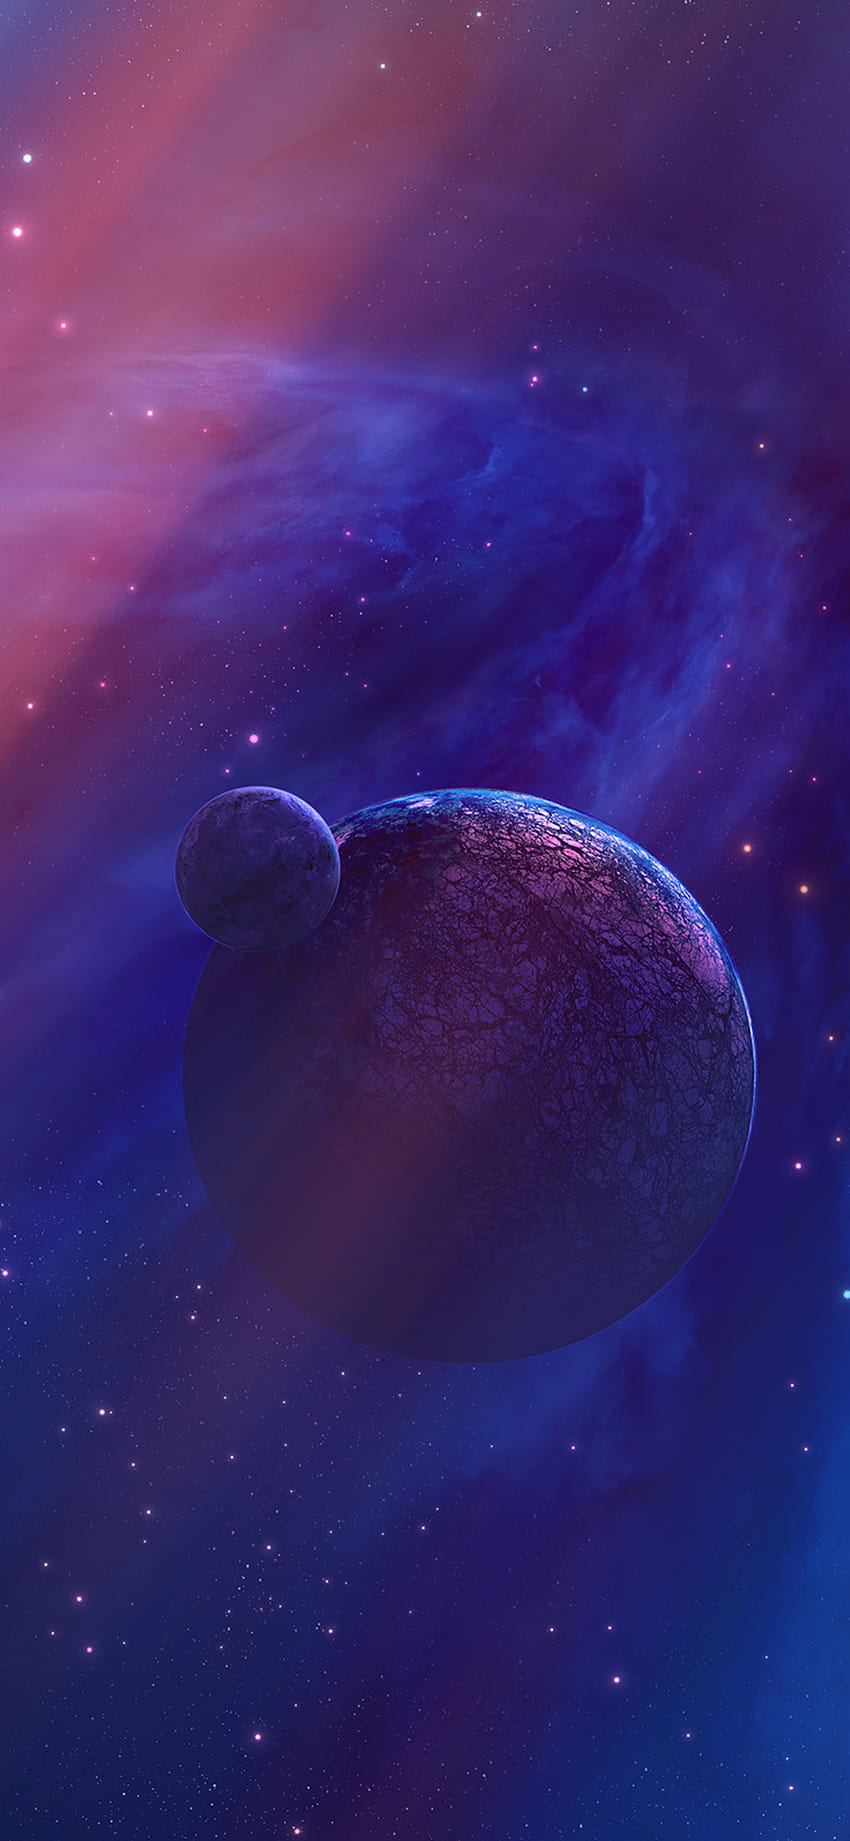 1125x2436 Purpurowa Planeta Przestrzeń kosmiczna Iphone XS,Iphone 10,Iphone X , Tła i, iphone planeta fioletowy Tapeta na telefon HD